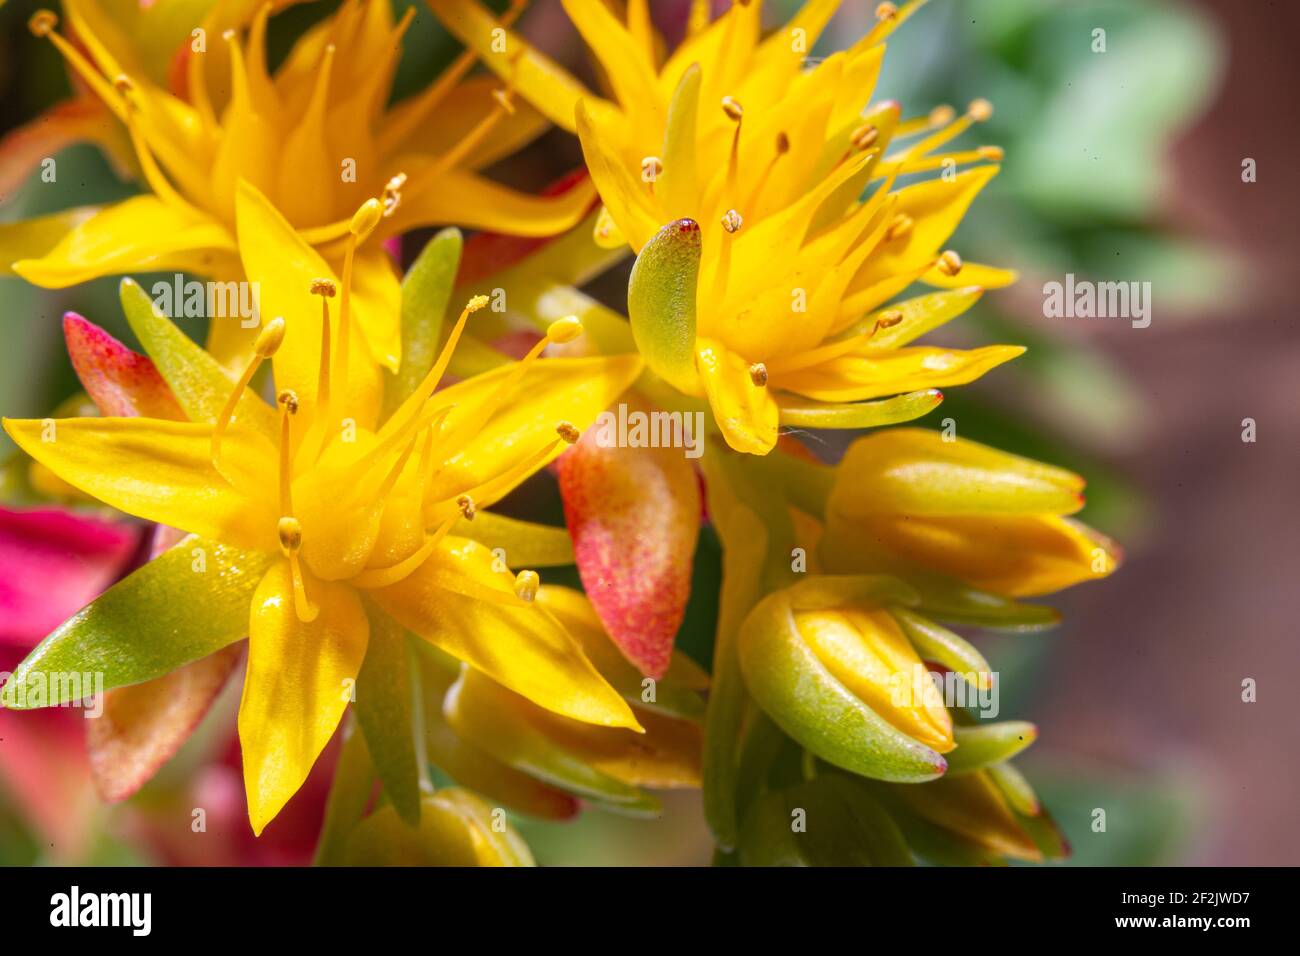 wonderful yellow flower of the Sedum oreganum succulent plant Stock Photo